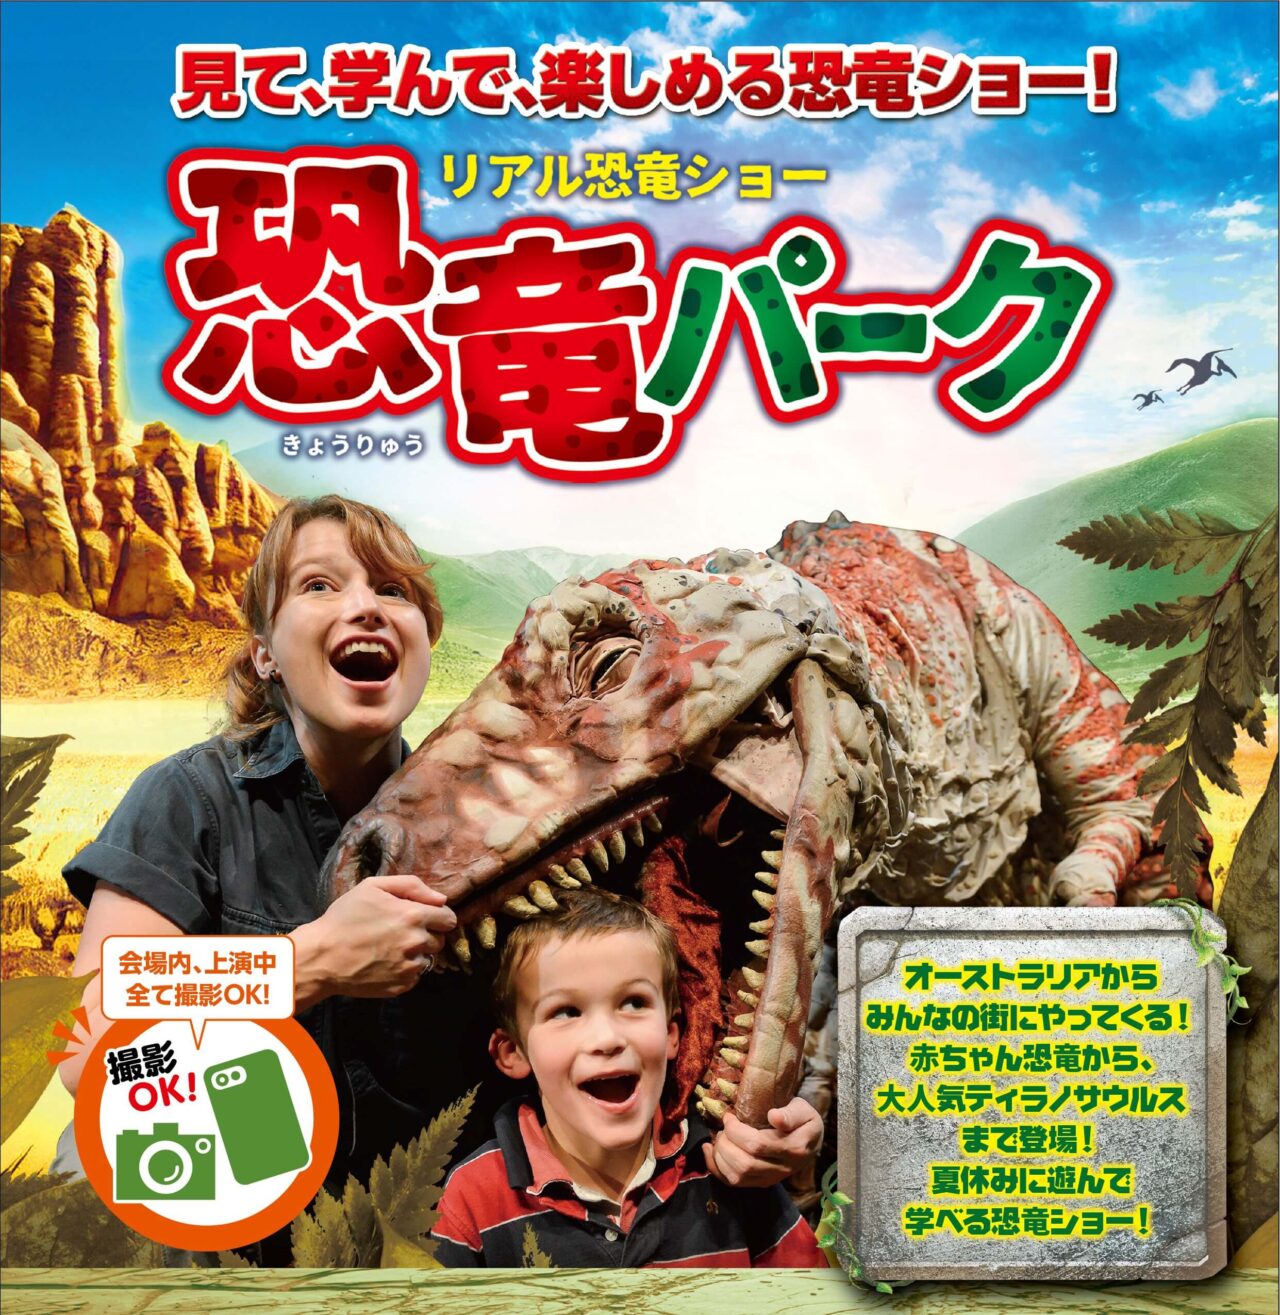 リアル恐竜ショー「恐竜パーク」